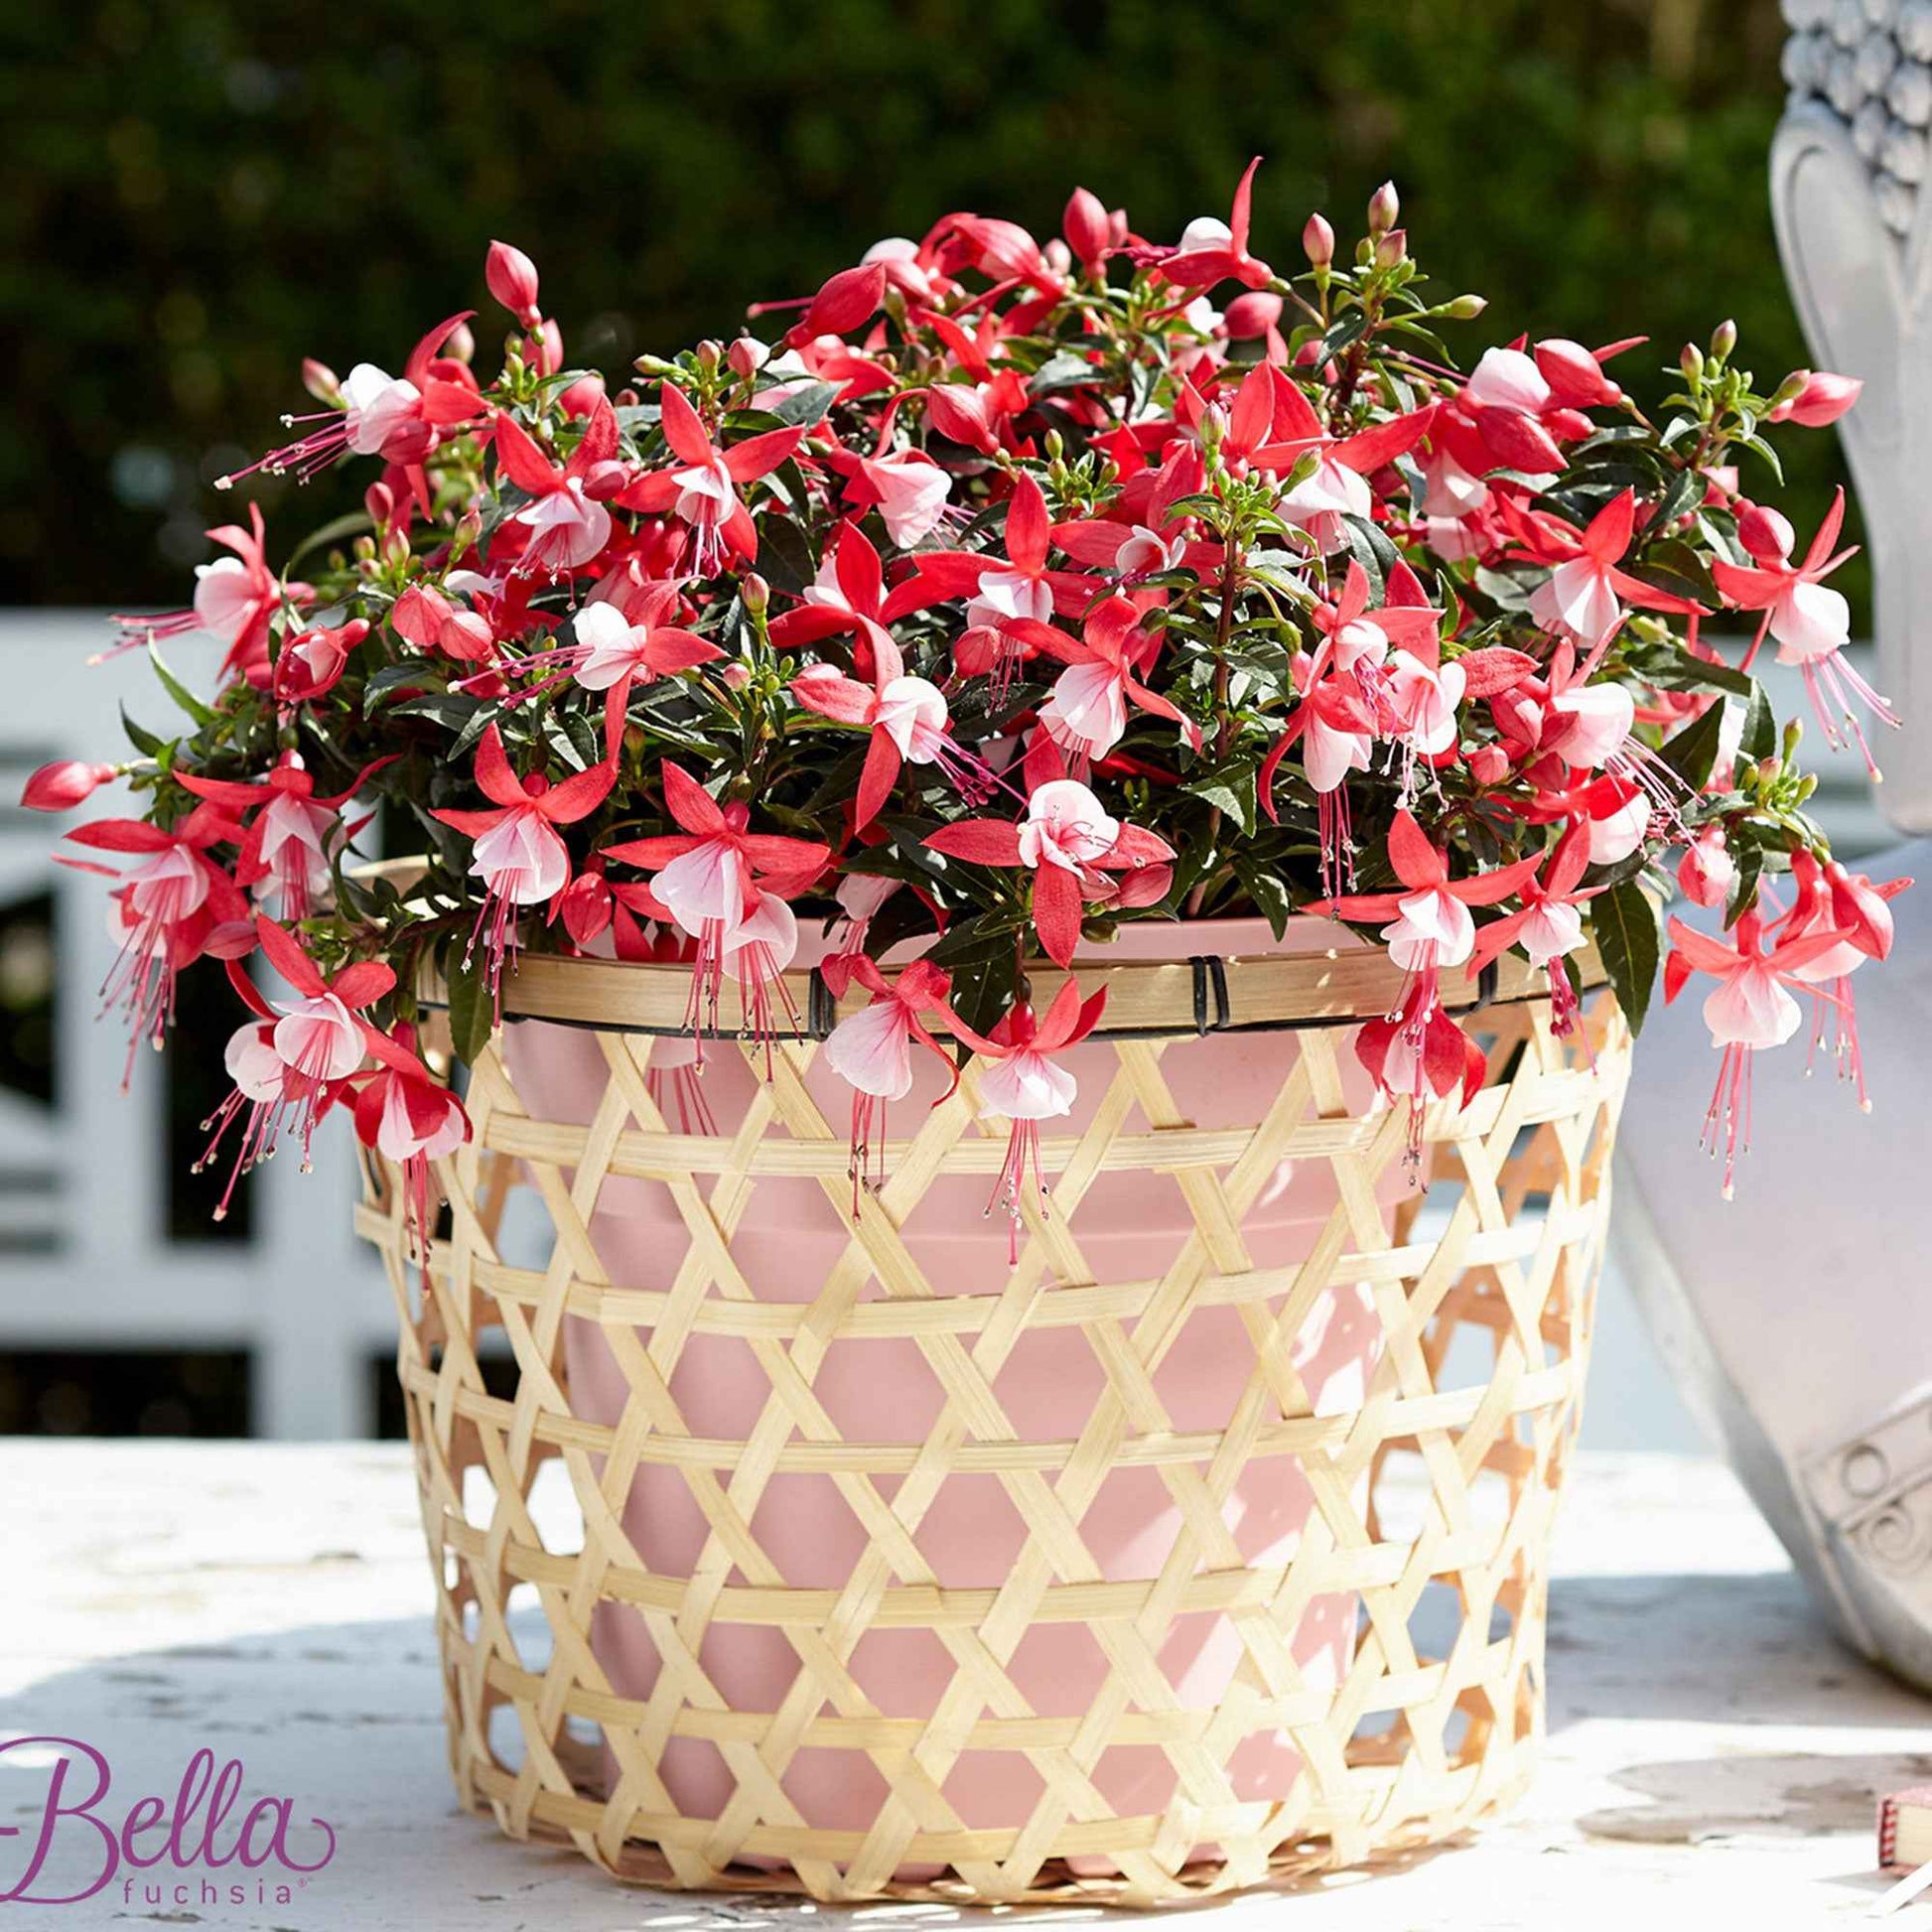 3x Fuchsia 'Evita' rot-weiβ - Beetpflanzen